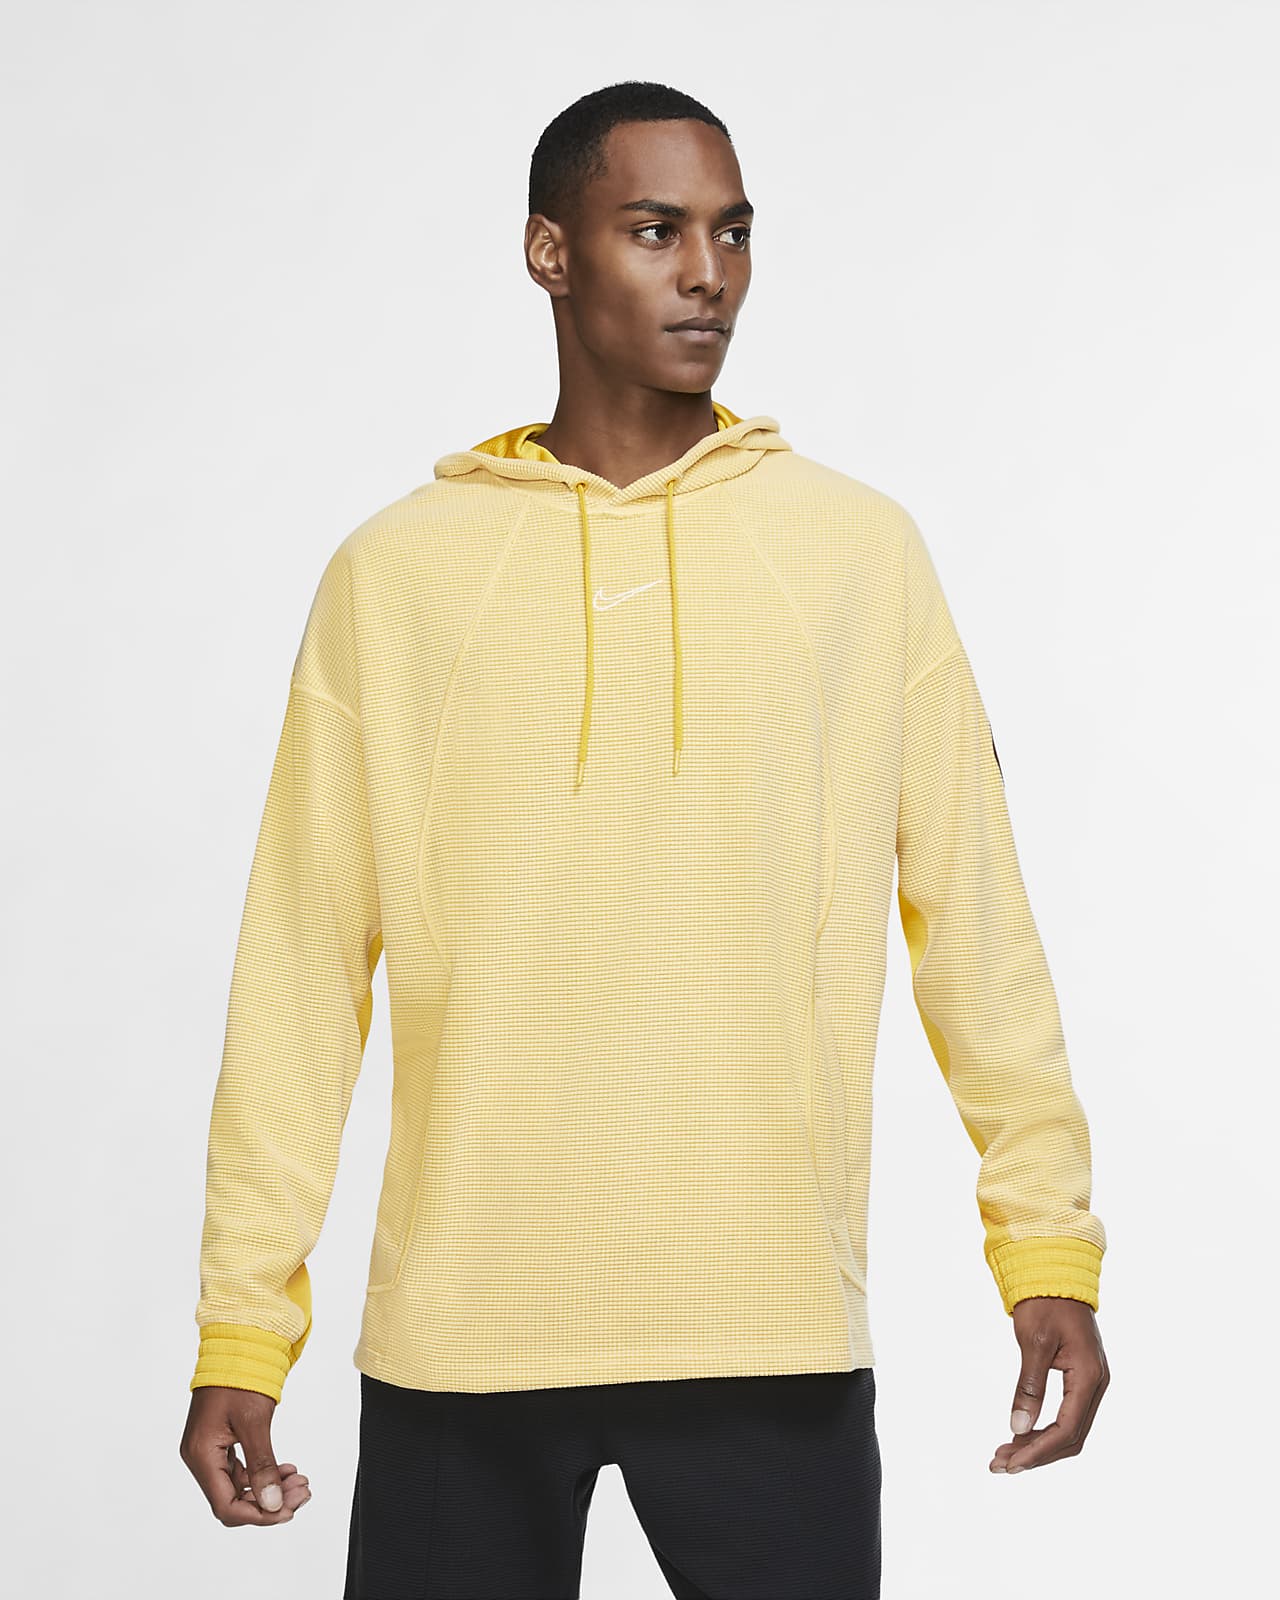 nike mens yellow hoodie